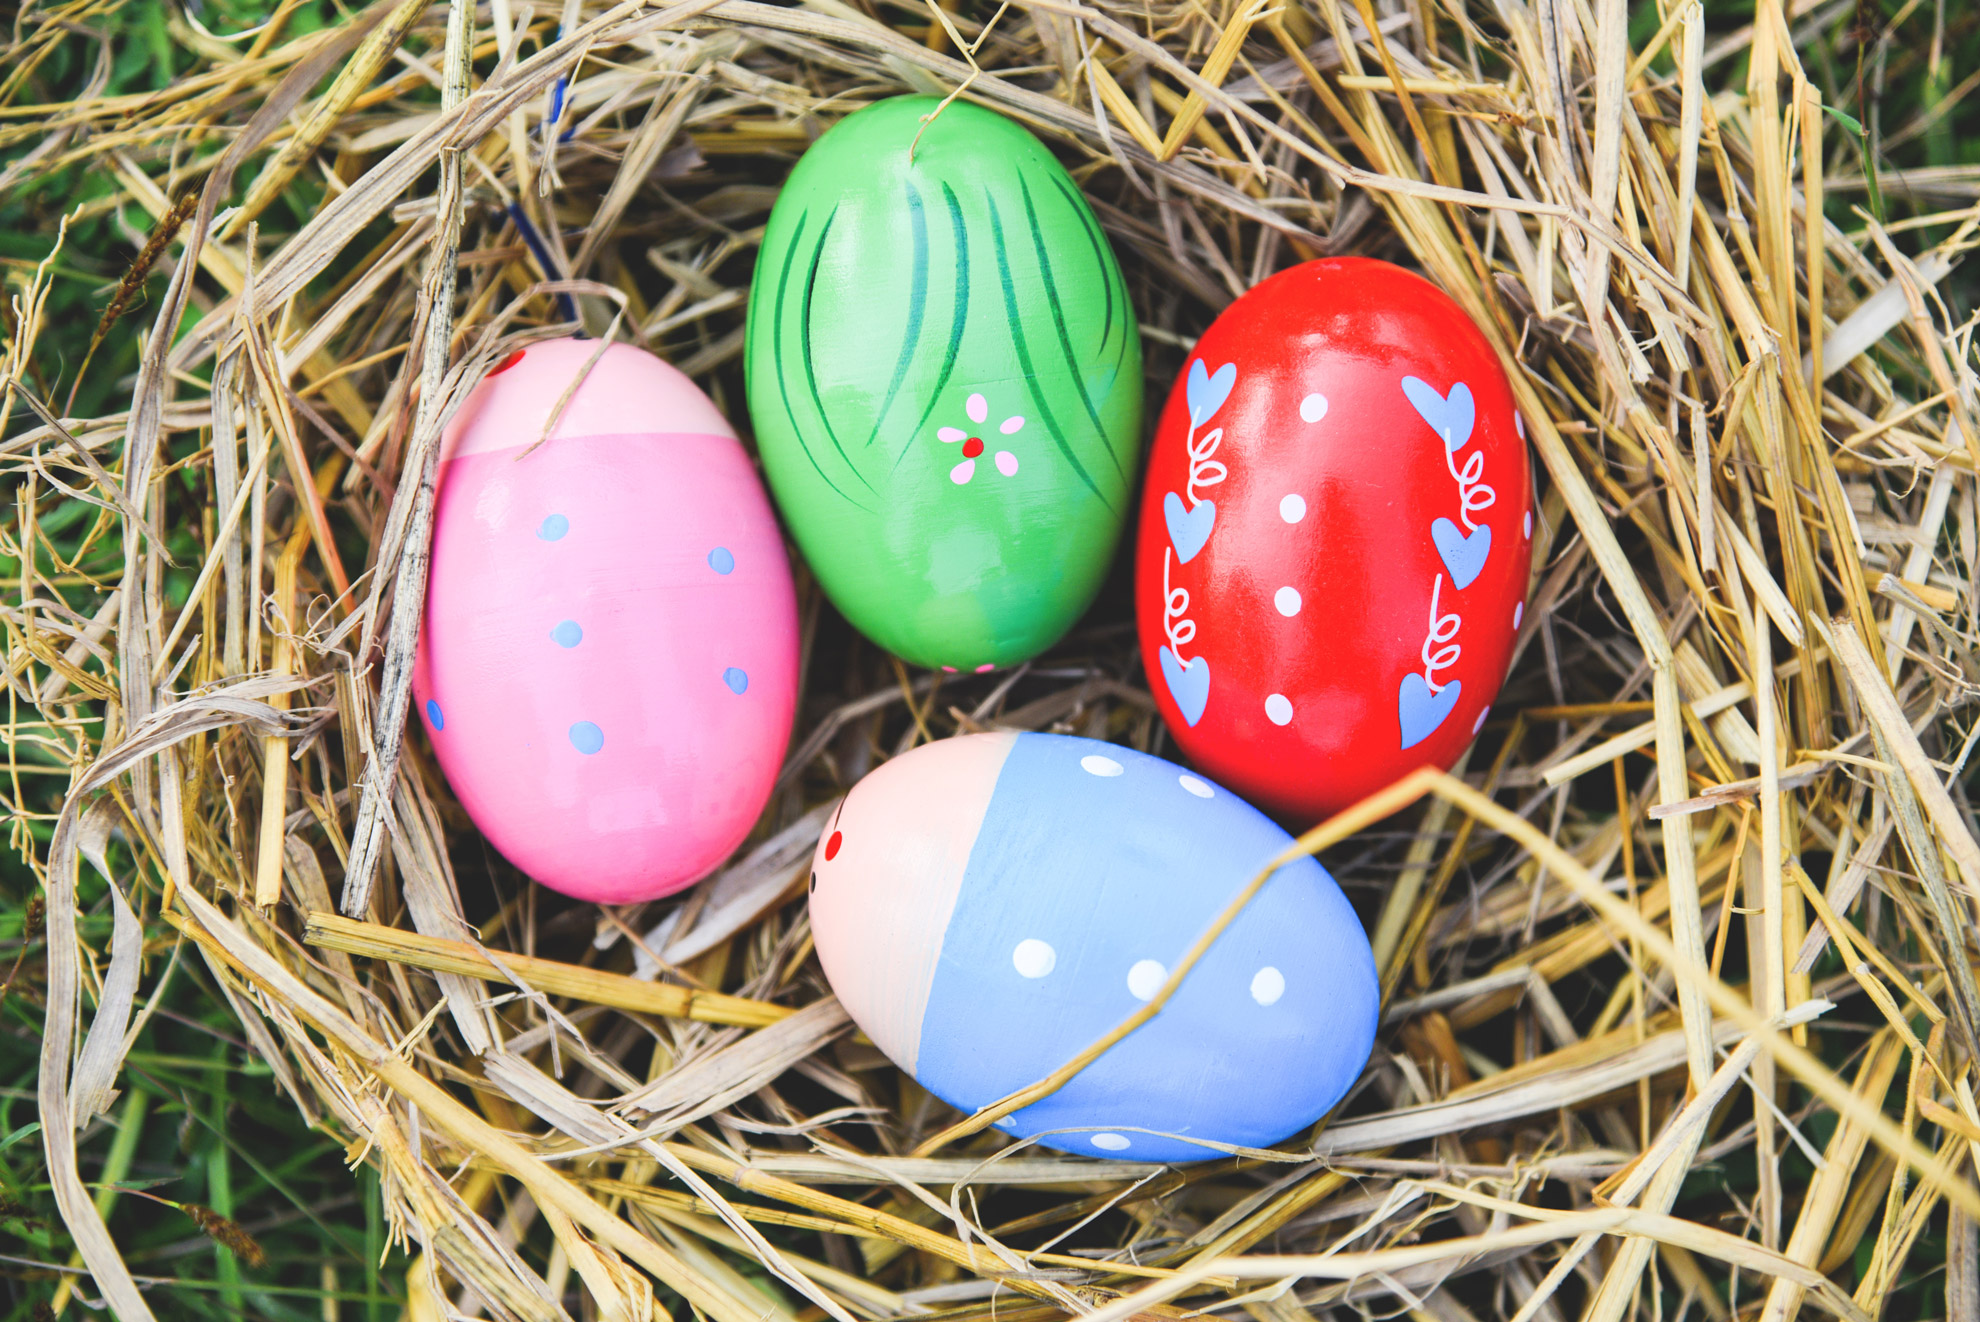 caccia alle uova di pasqua. Delle uova dipinte di diversi colori deposte in un nido di paglia